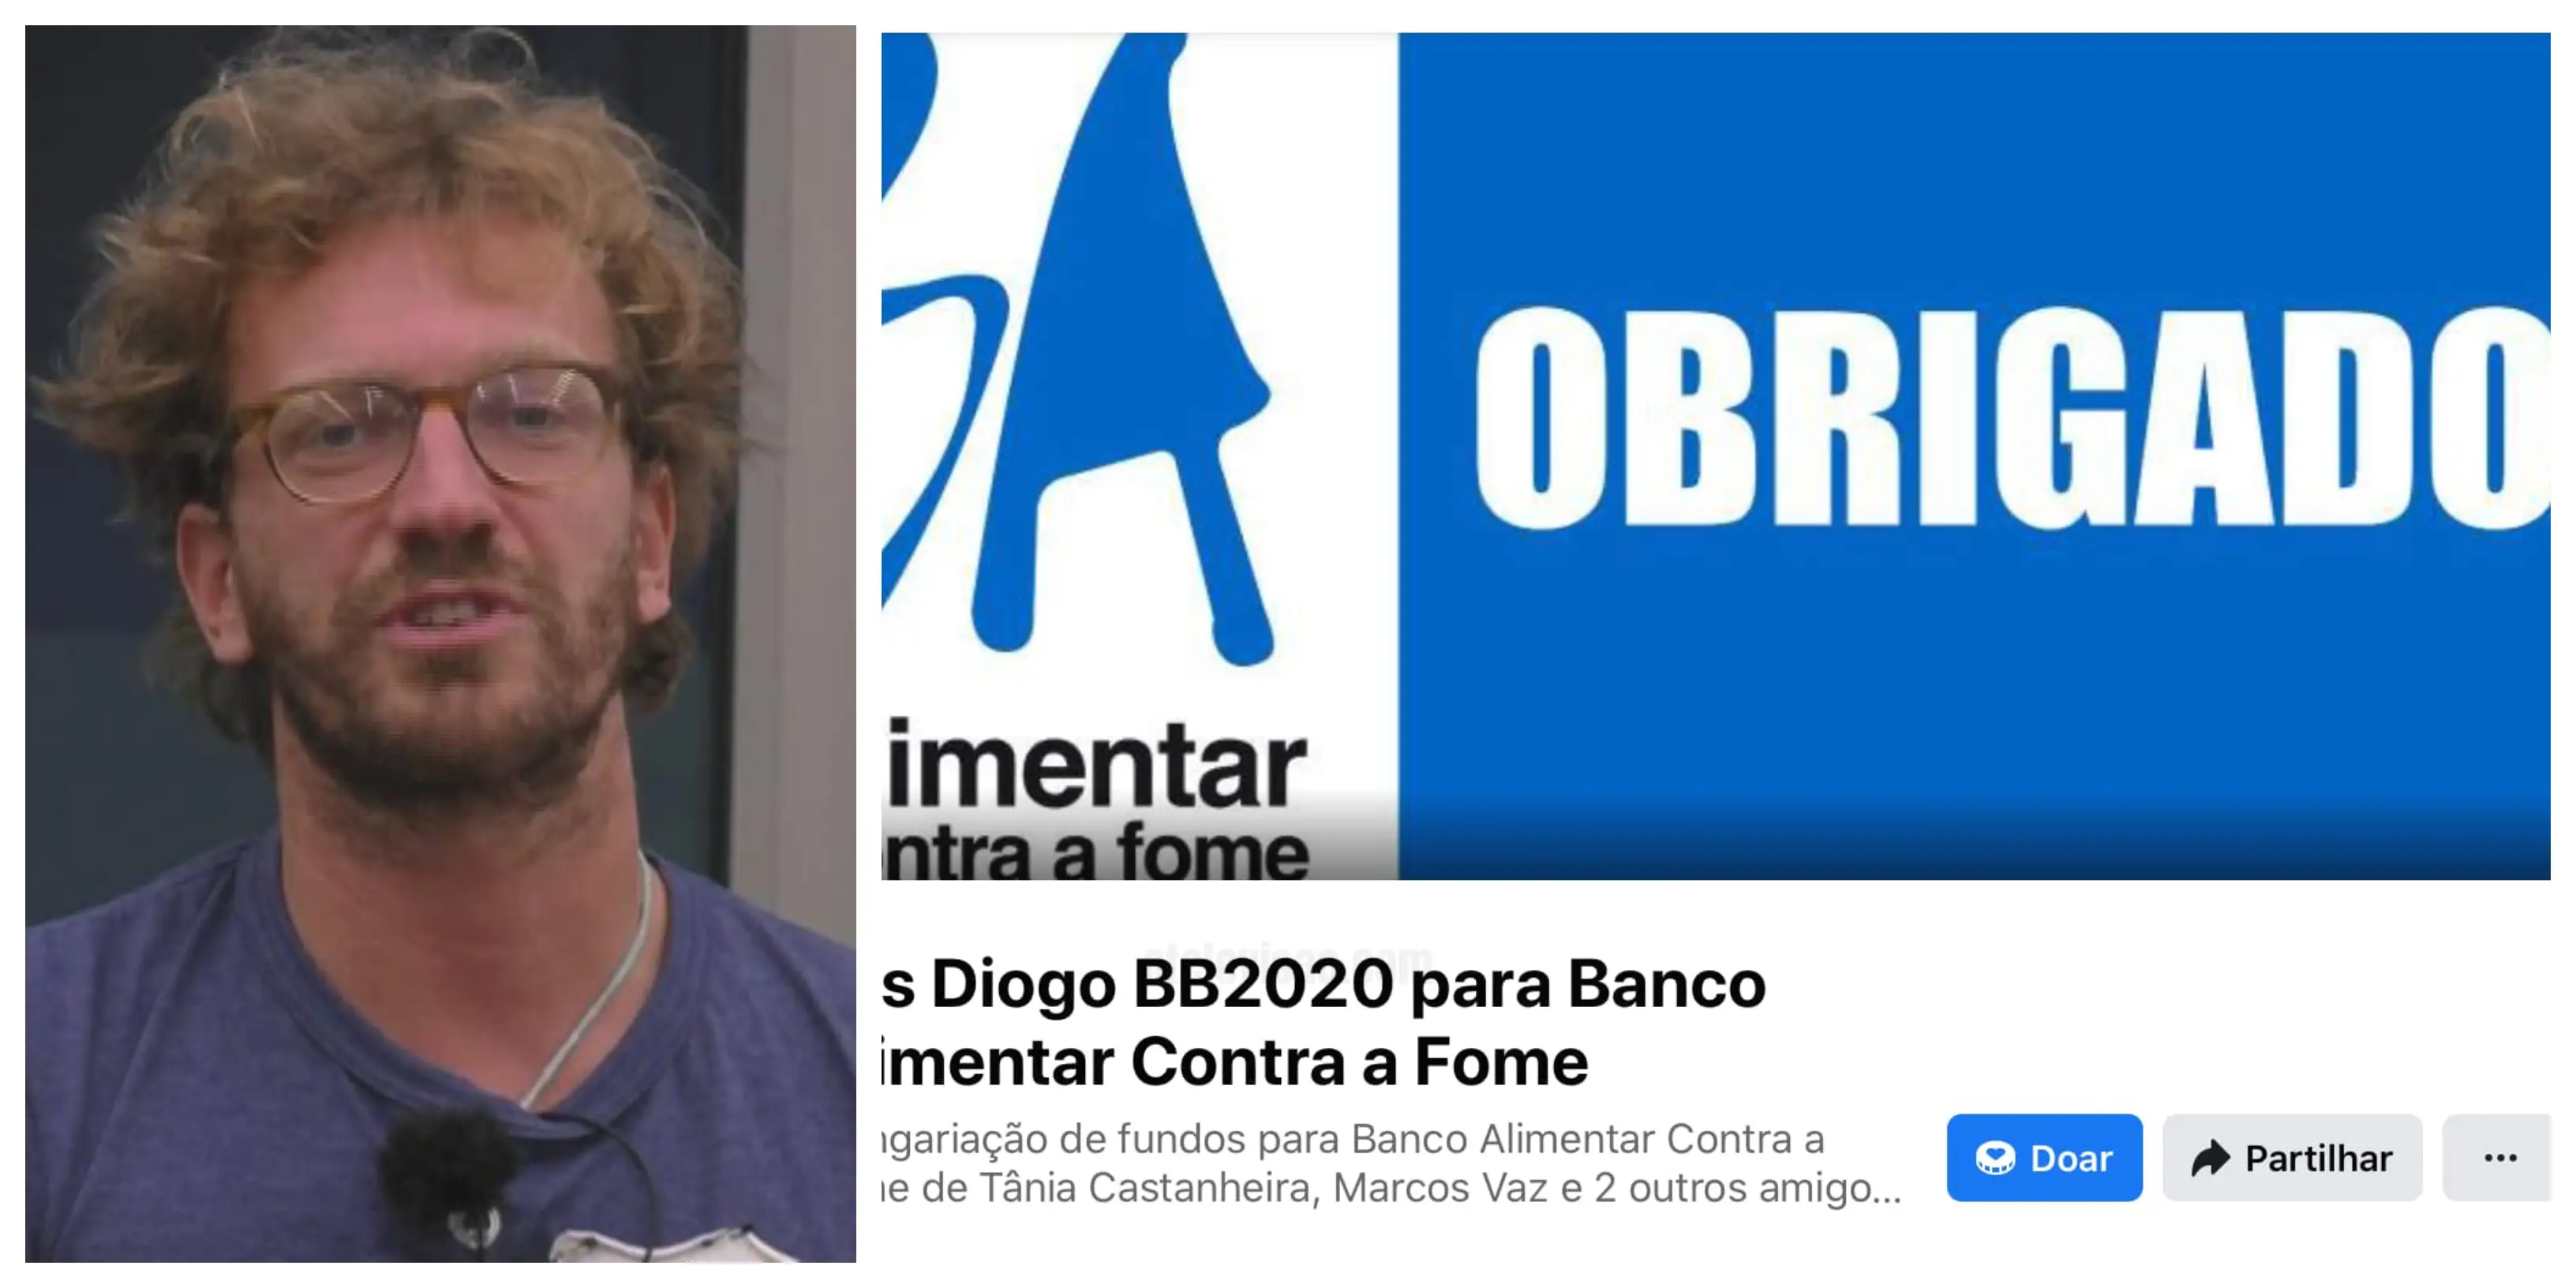 Diogo-Banco-Alimentar-Contra-A-Fome